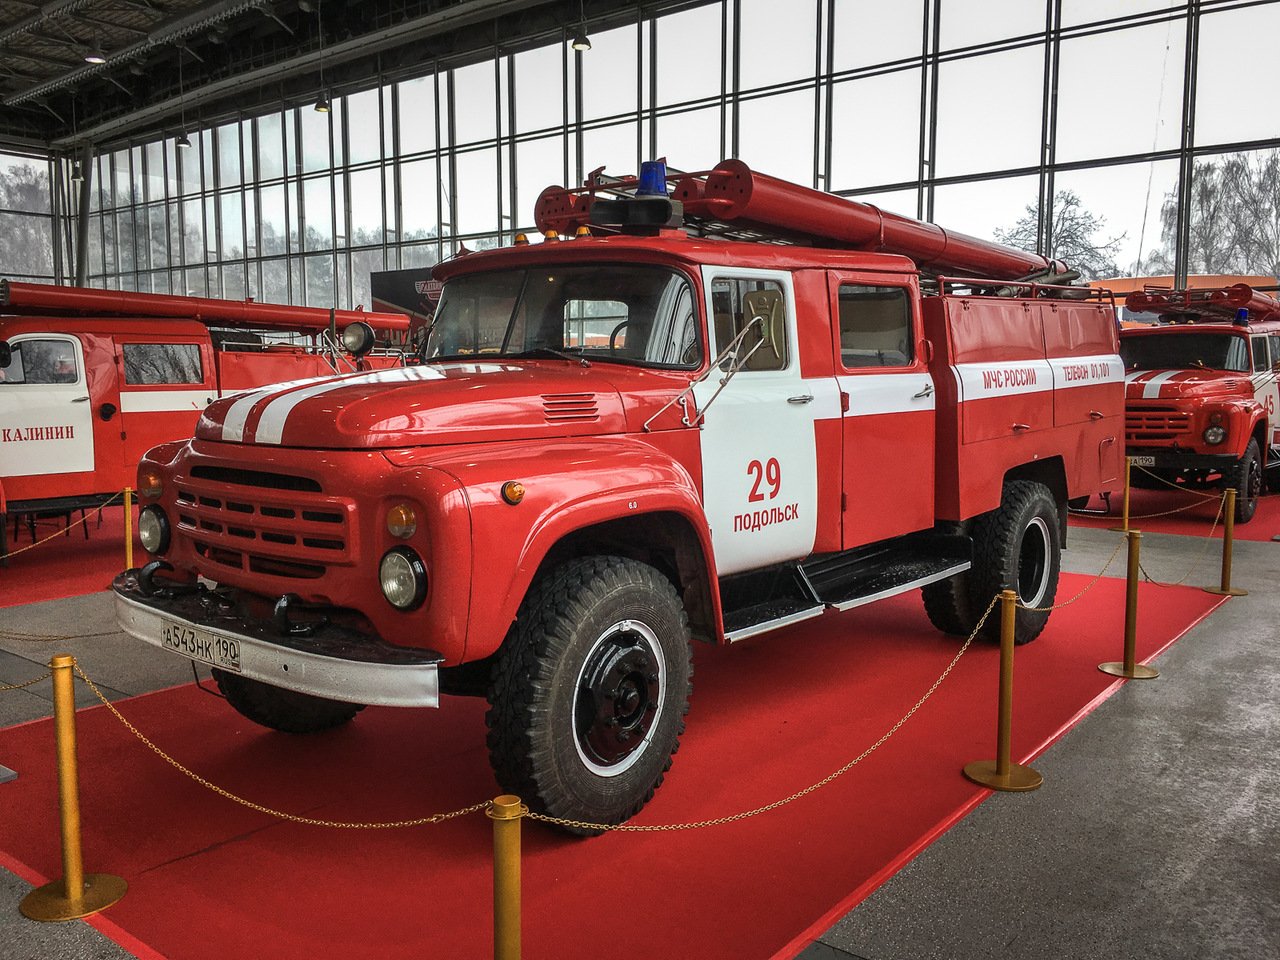 Использование пожарных автомобилей